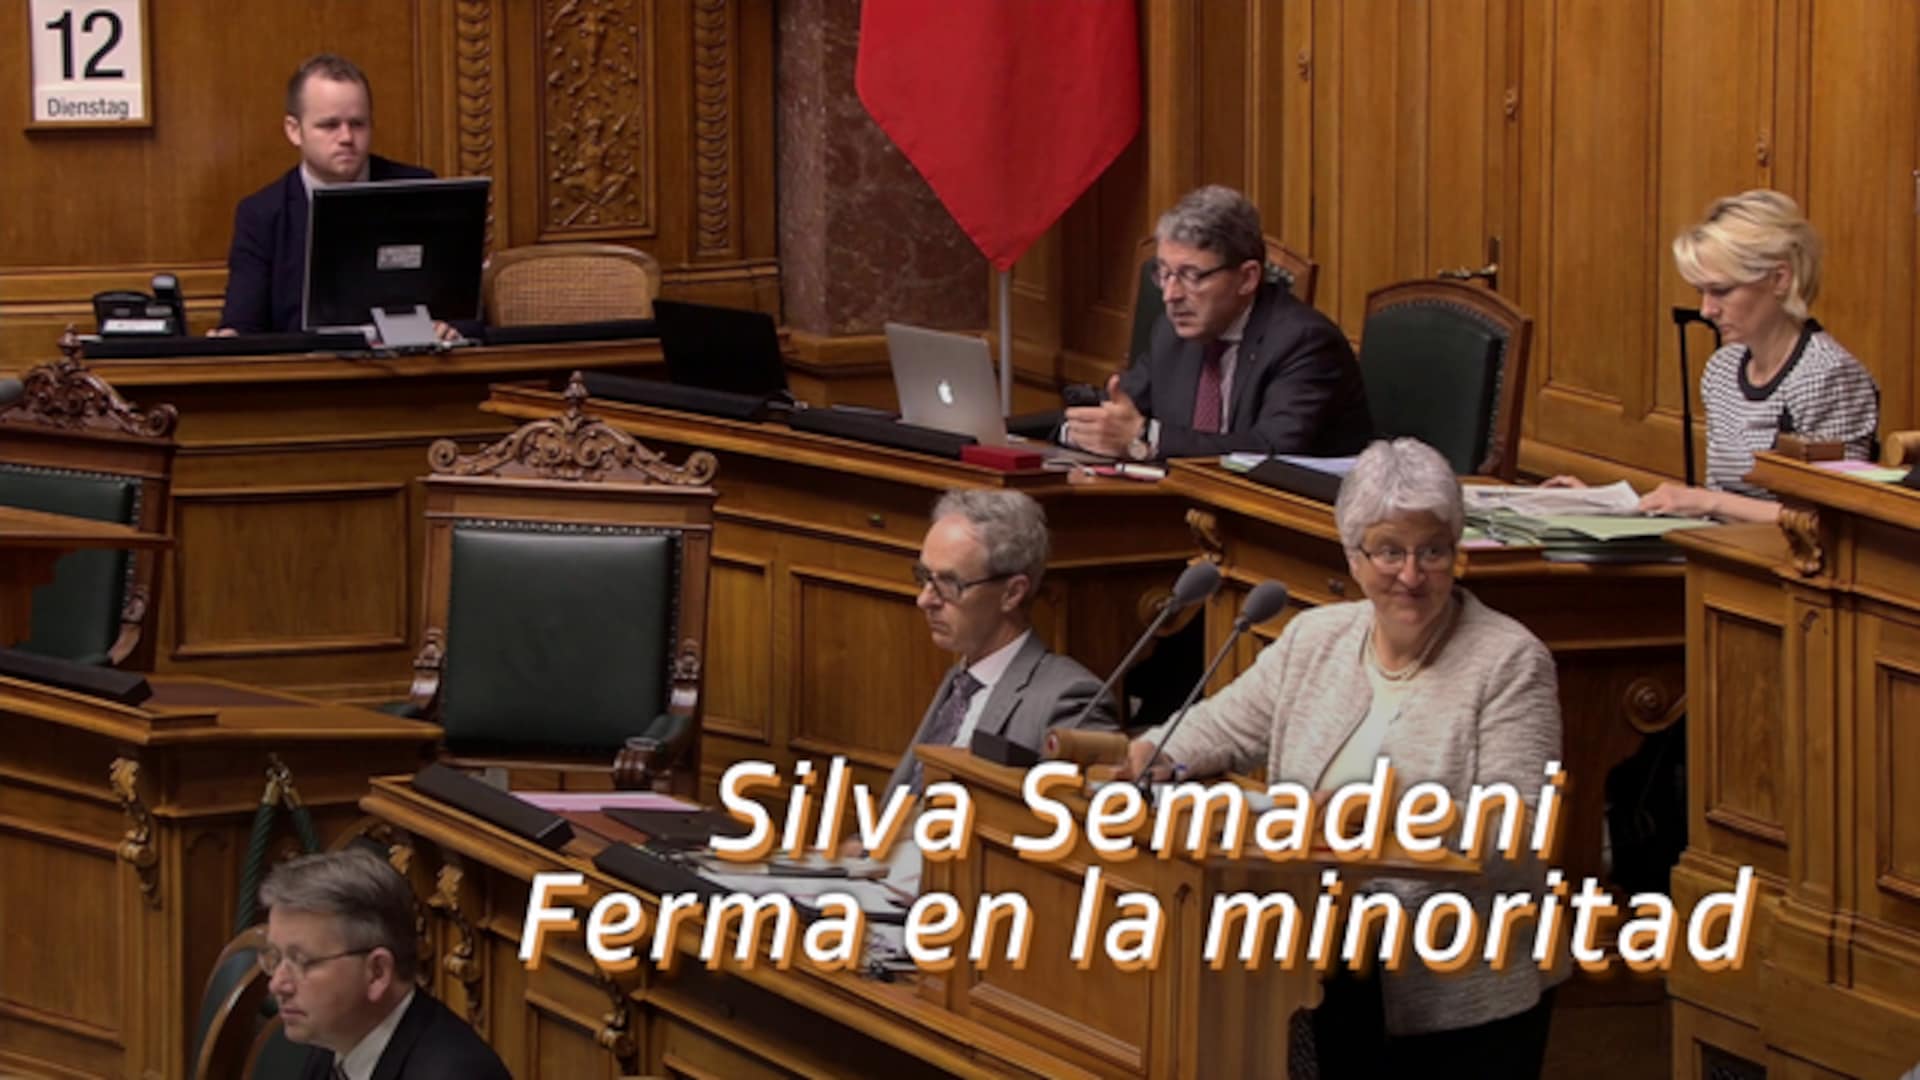 Silva Semadeni - Ferma en la minoritad